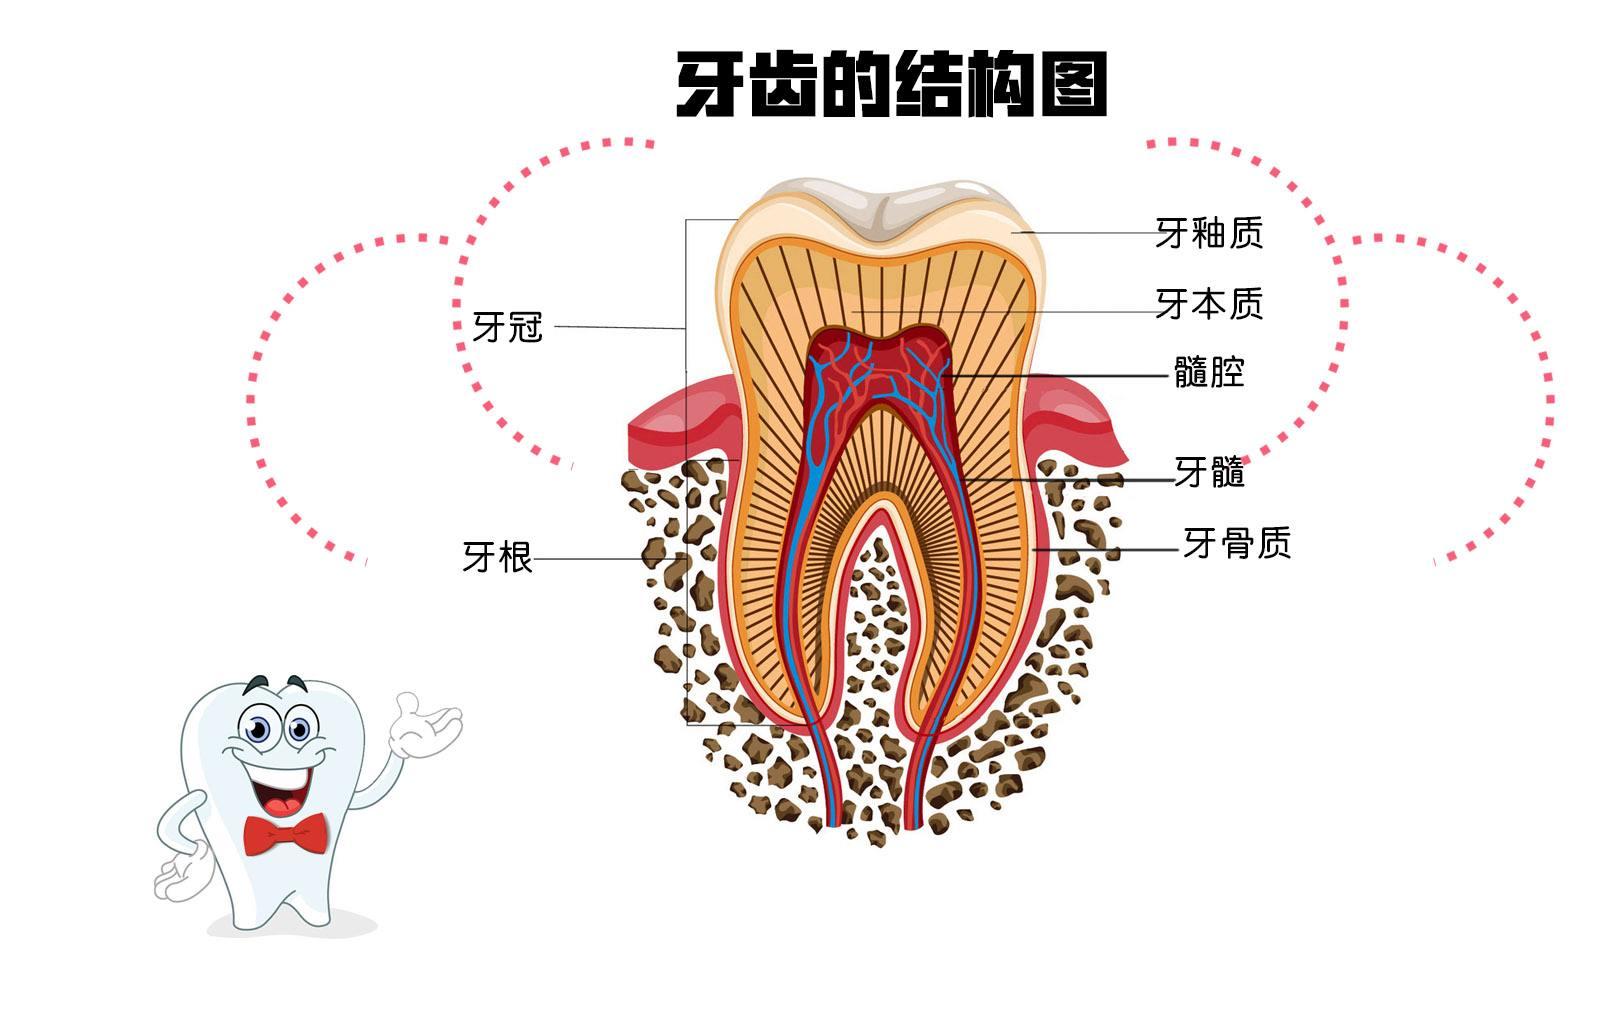 谢邀,牙齿发黄不都是病态,把牙齿的剖开来看,纵断面有三层组织,最